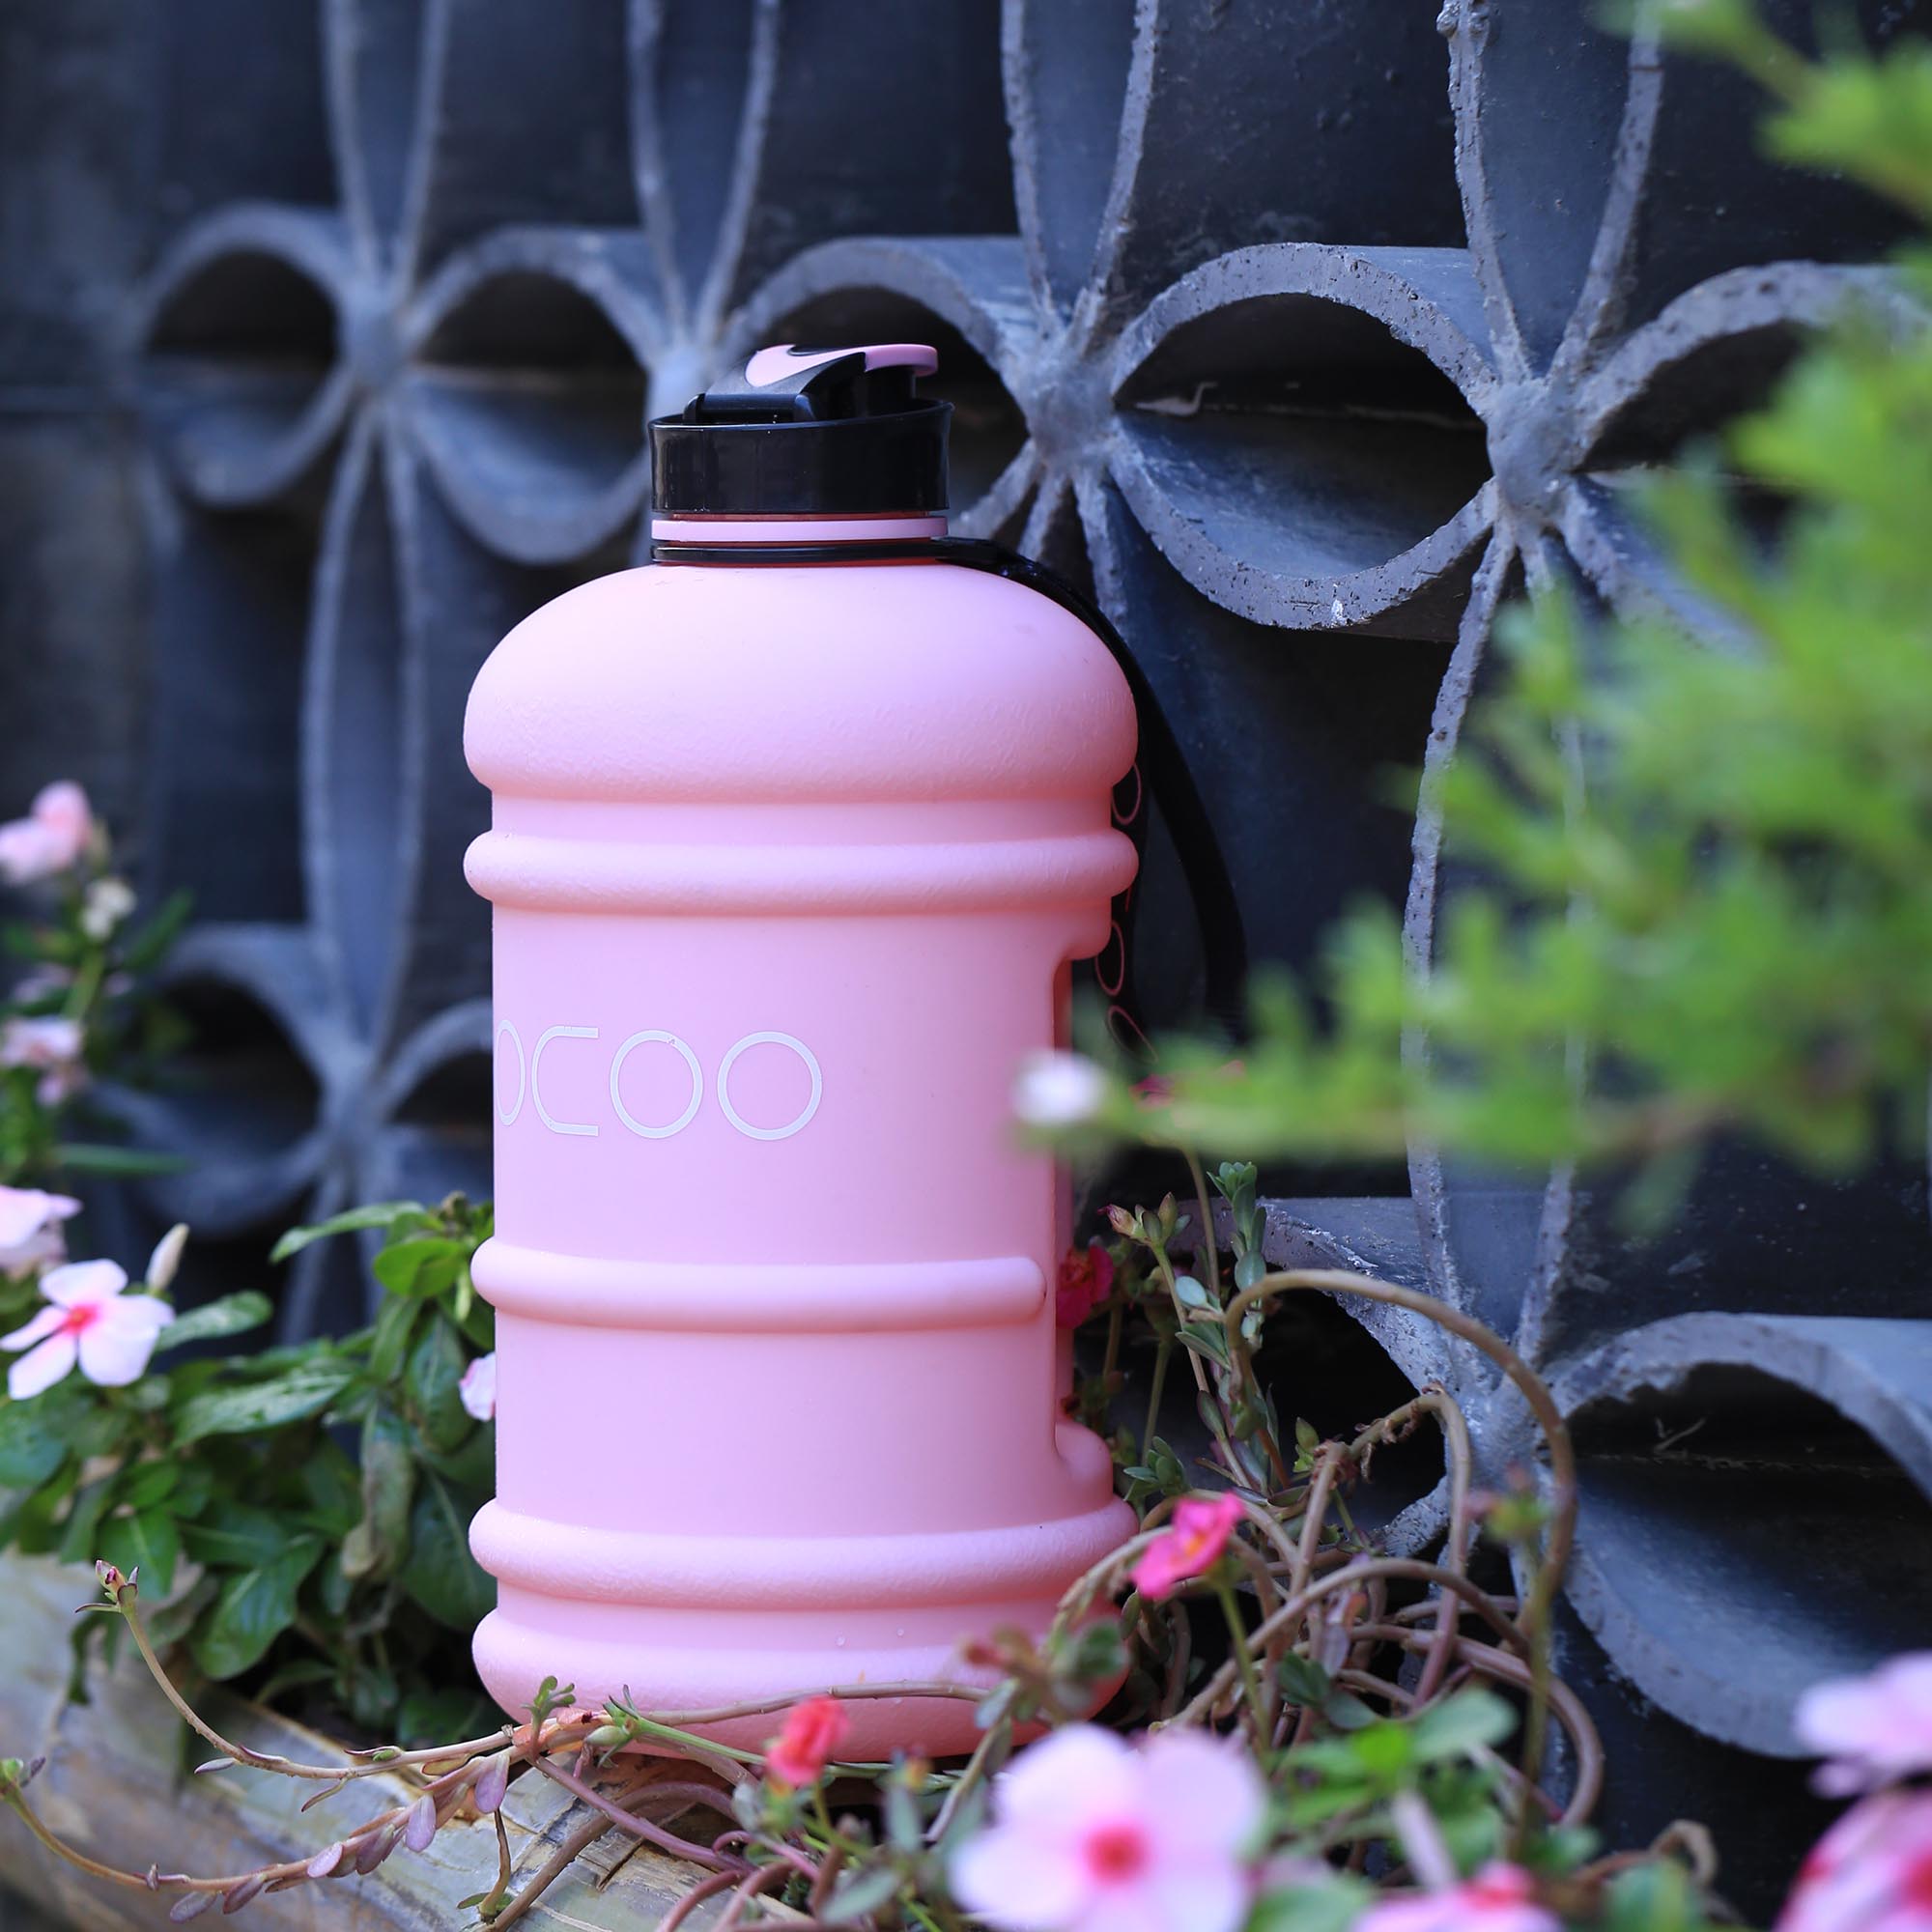 https://www.socoobottle.com/wp-content/uploads/2018/09/water-jug-pink-outdoor.jpg